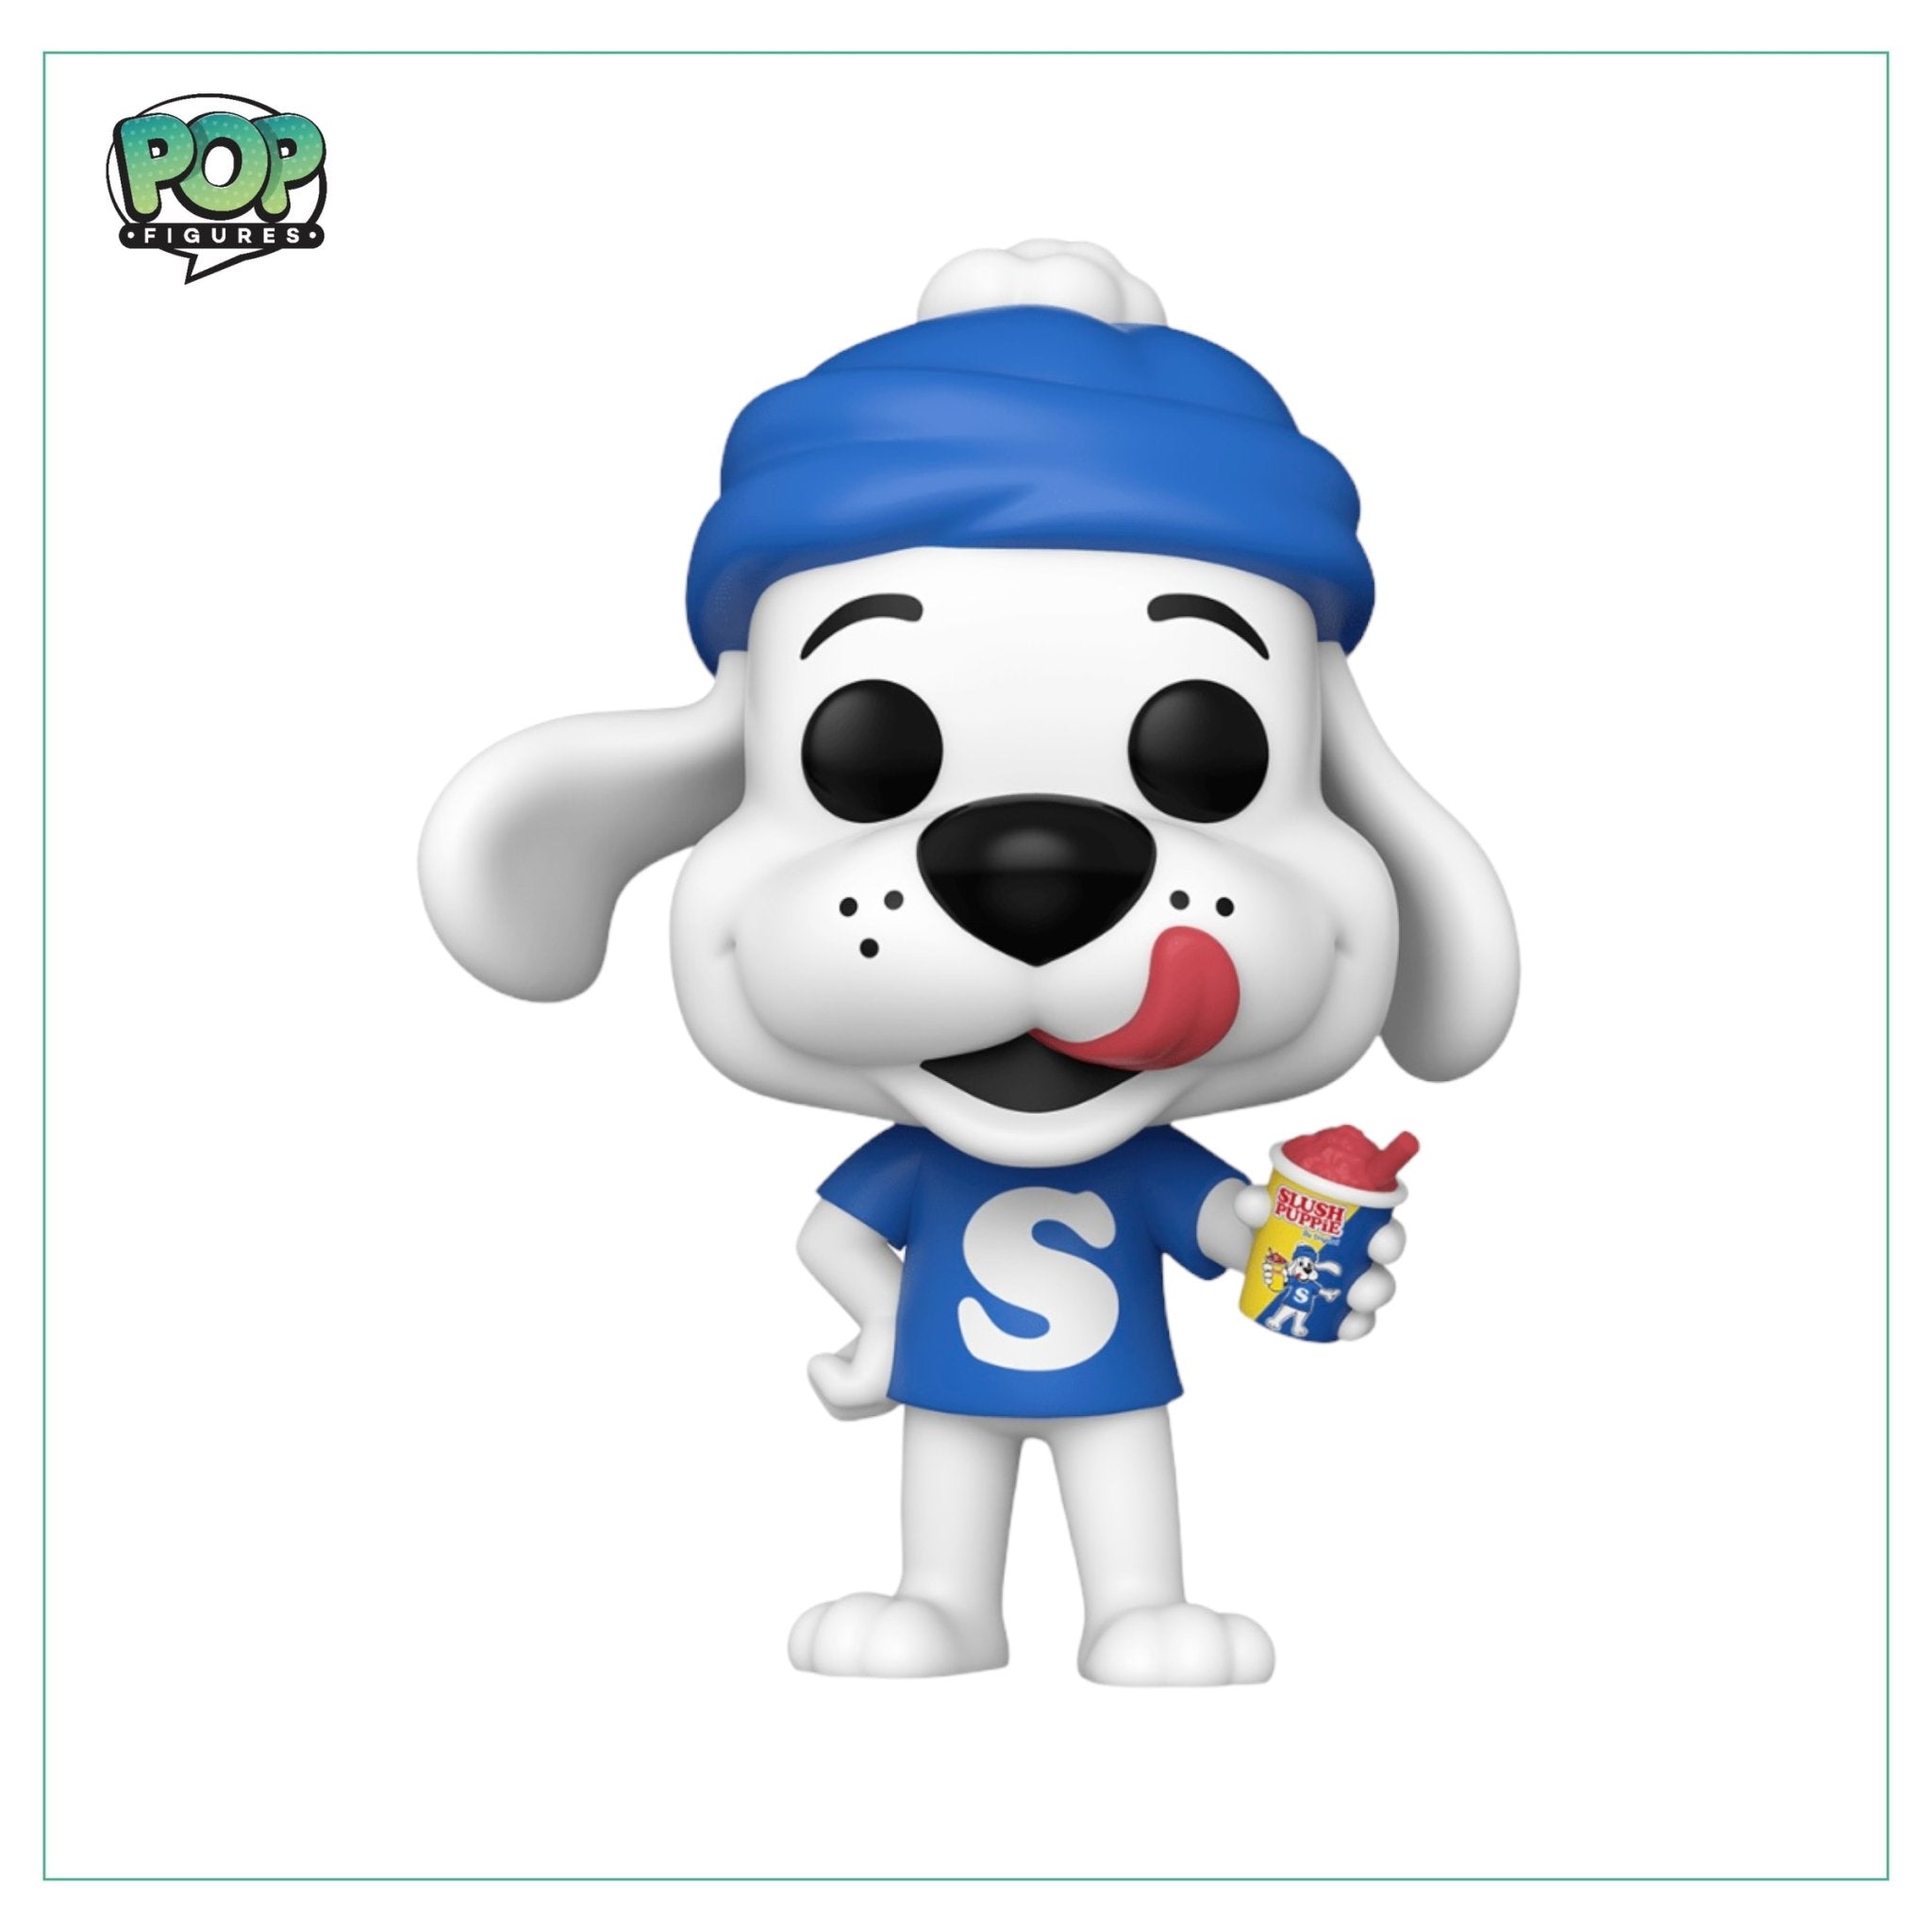 Slush Puppie #106 Funko Pop! (Scented) Slush Puppie AD Icons - Hot Topic Exclusive - Pop Figures | Funko | Pop Funko | Funko Pop